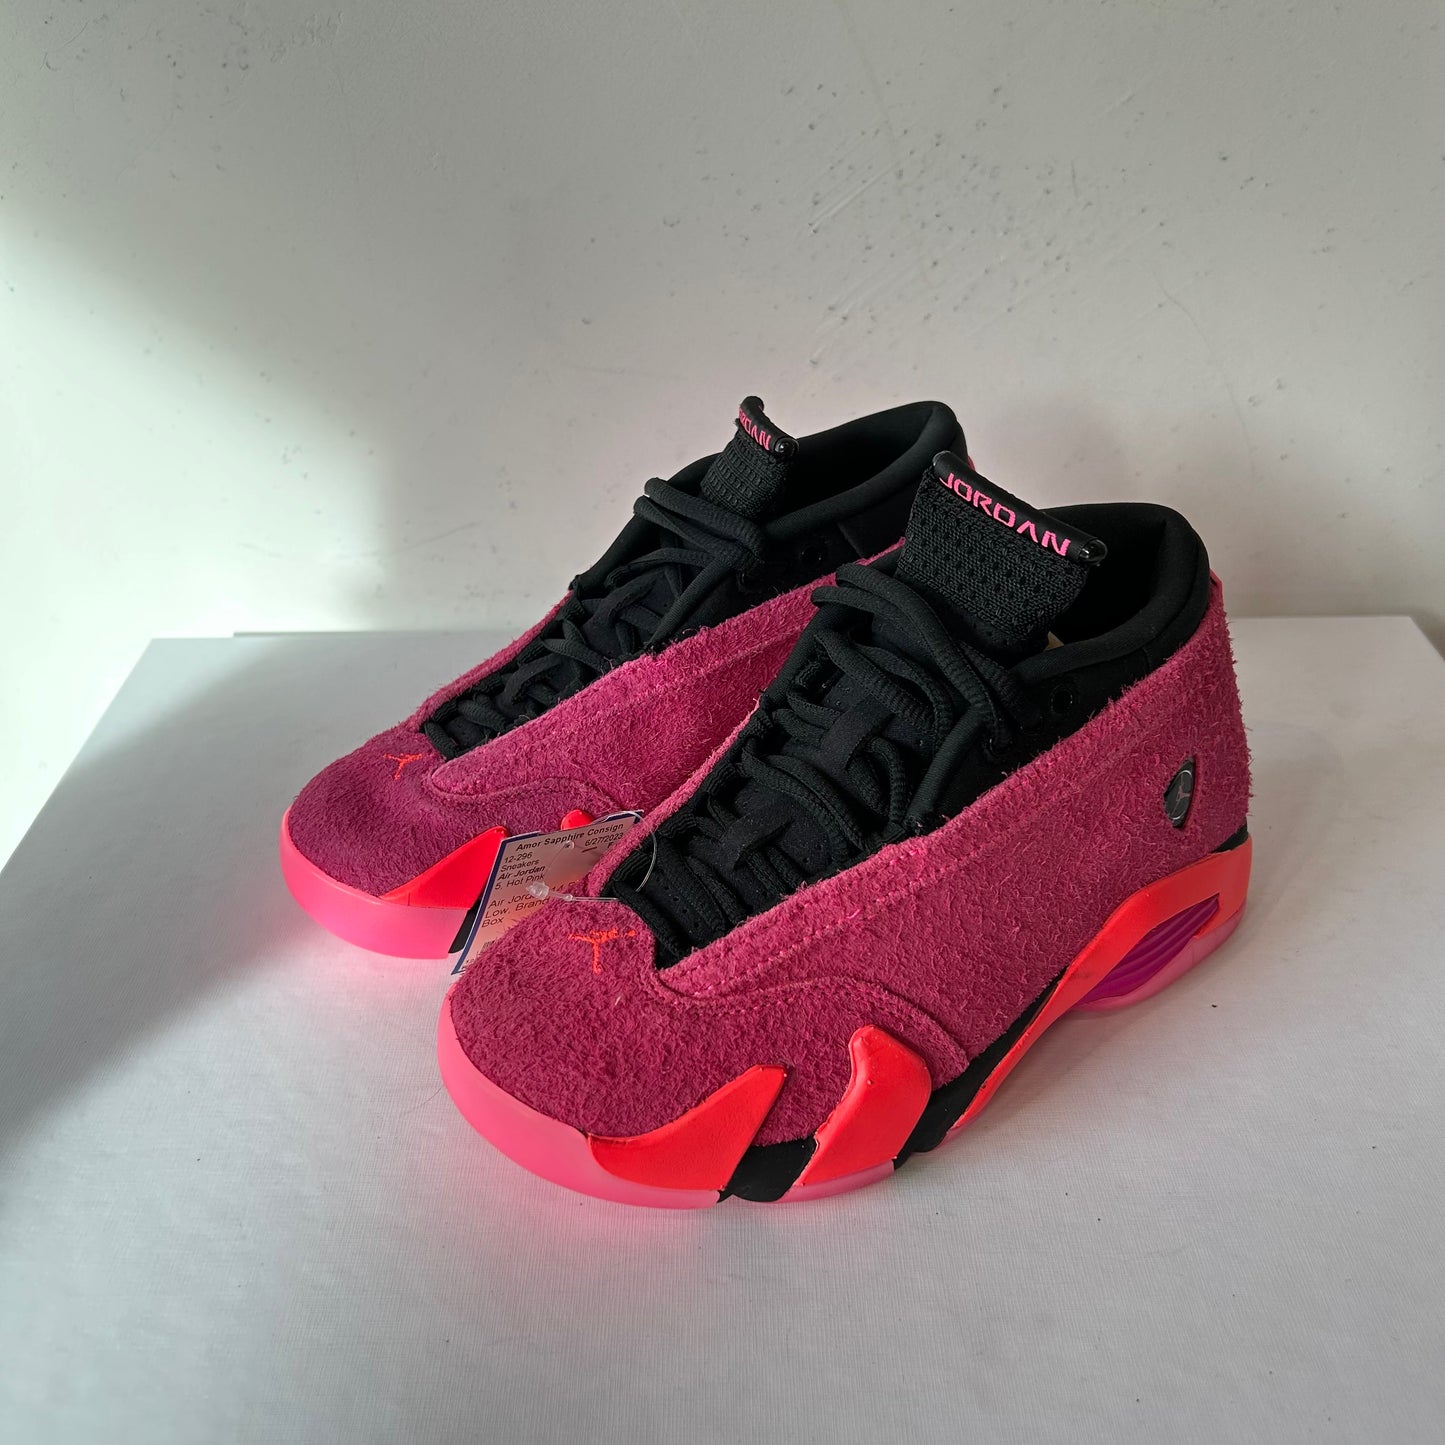 5 Air Jordan Hot Pink Retro Low Sneakers